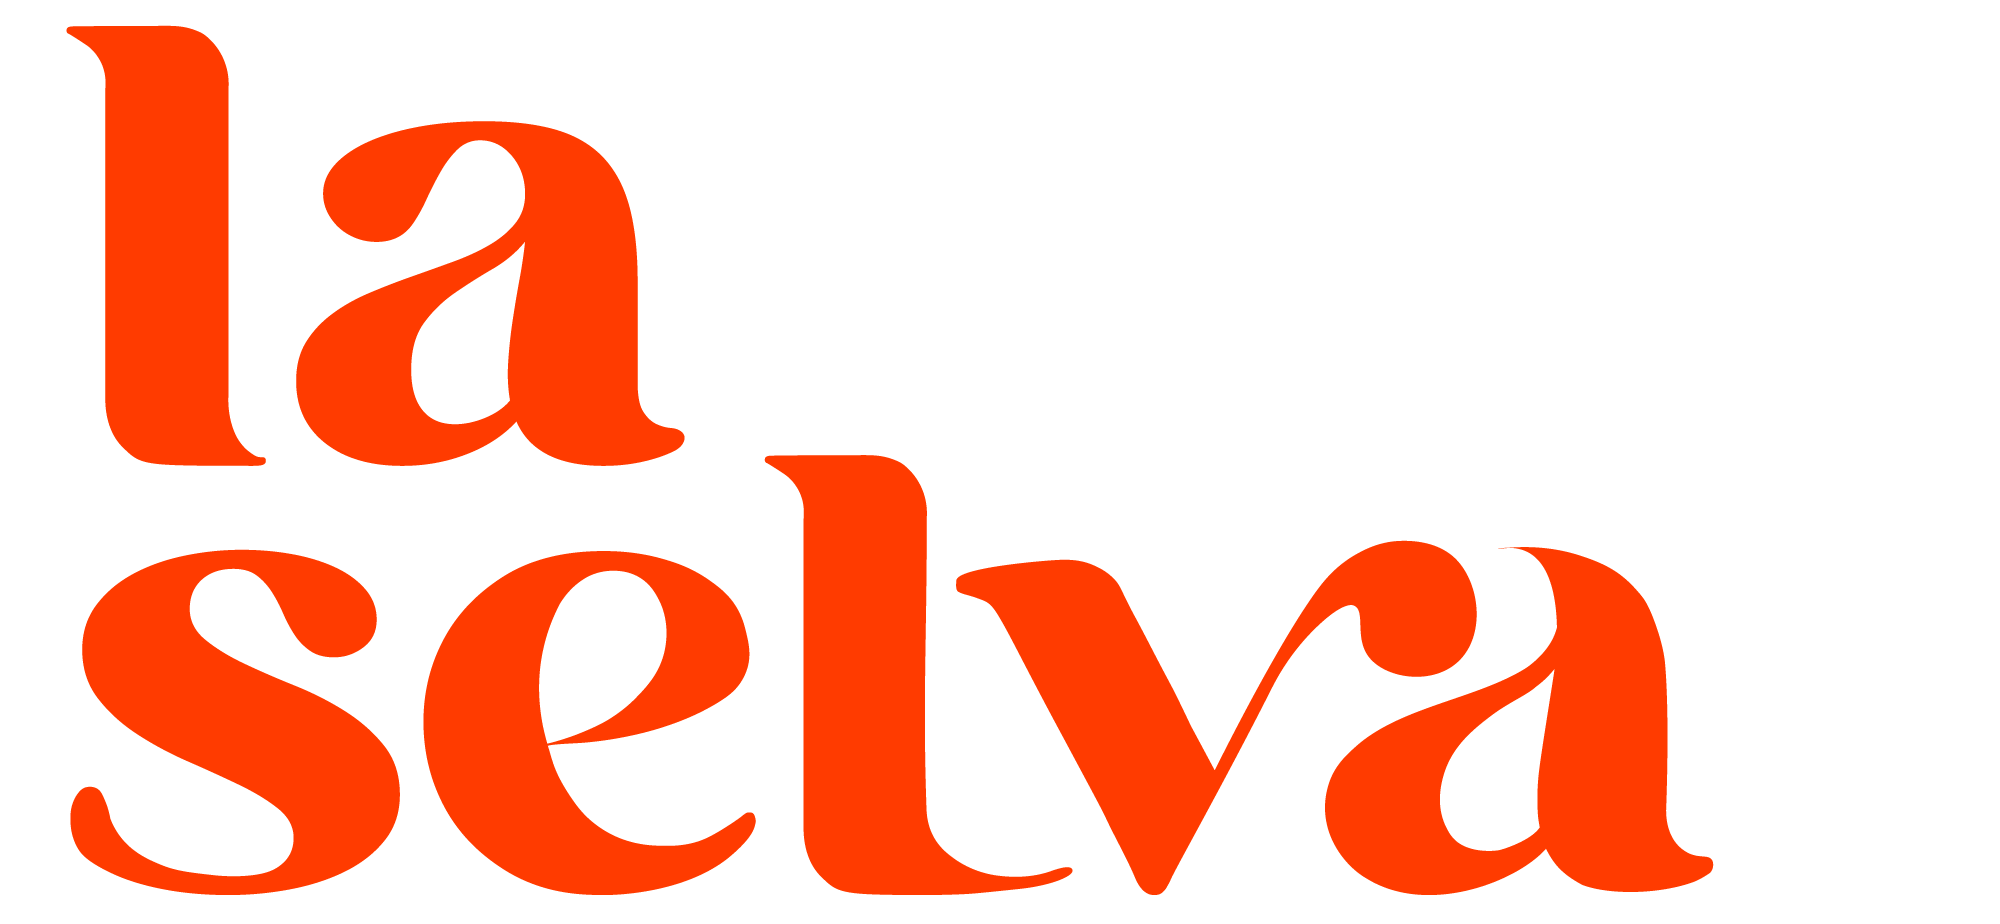 La Selva - Studio Digital Créatif